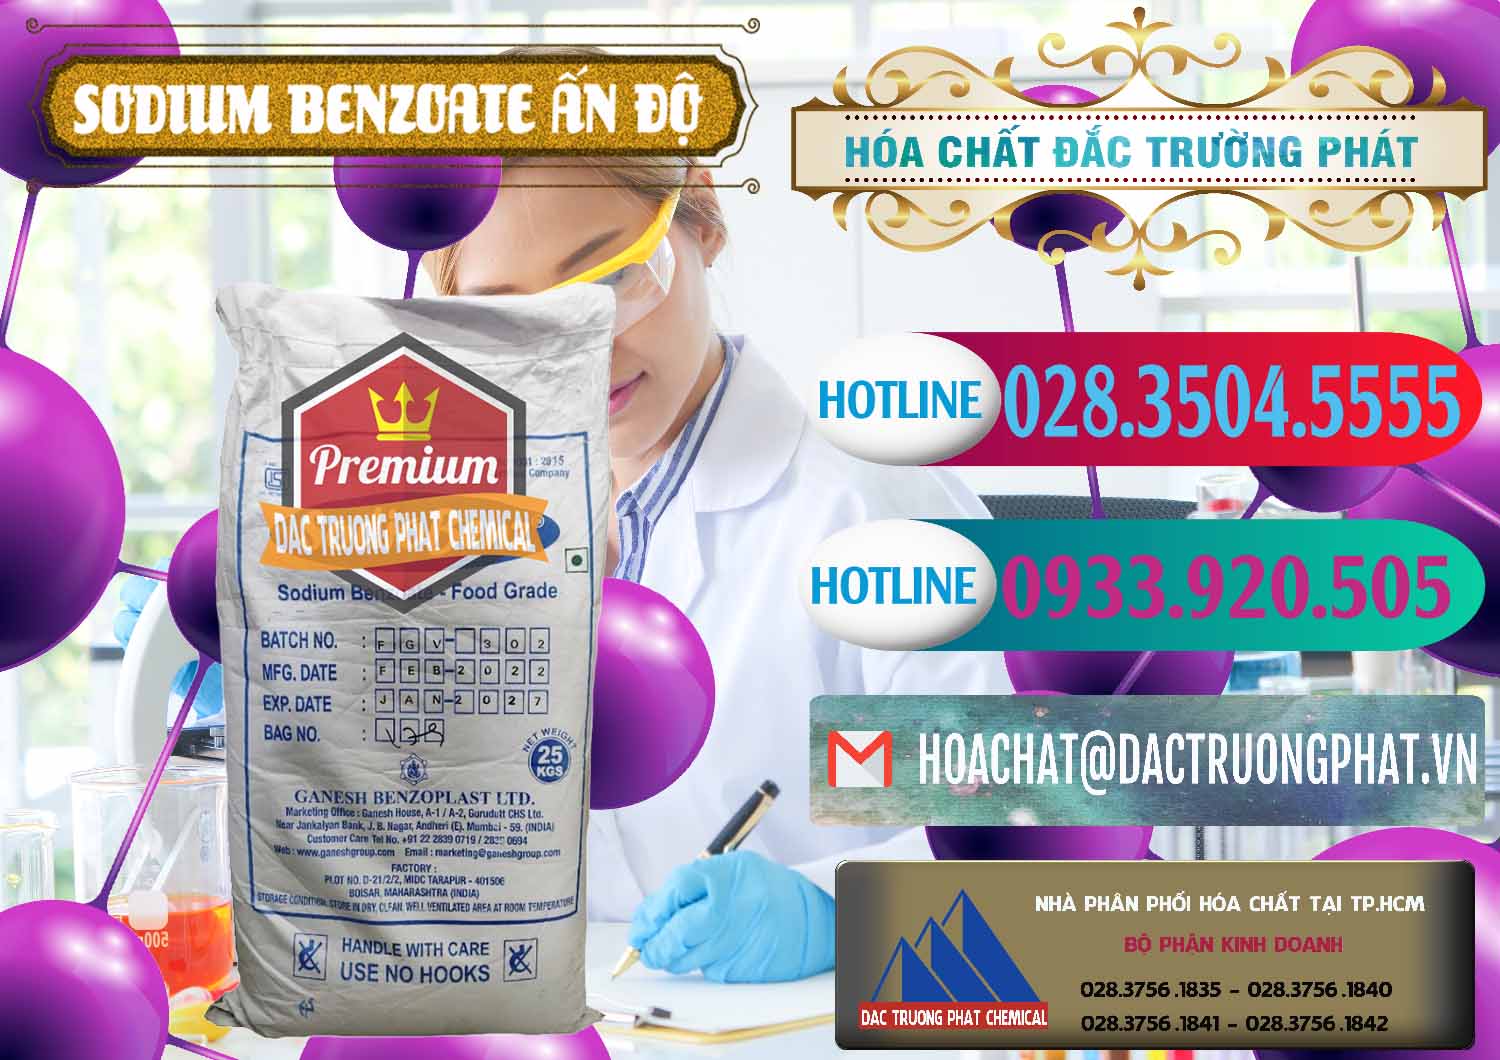 Đơn vị chuyên bán - phân phối Sodium Benzoate - Mốc Bột Ấn Độ India - 0361 - Cty chuyên kinh doanh _ cung cấp hóa chất tại TP.HCM - truongphat.vn